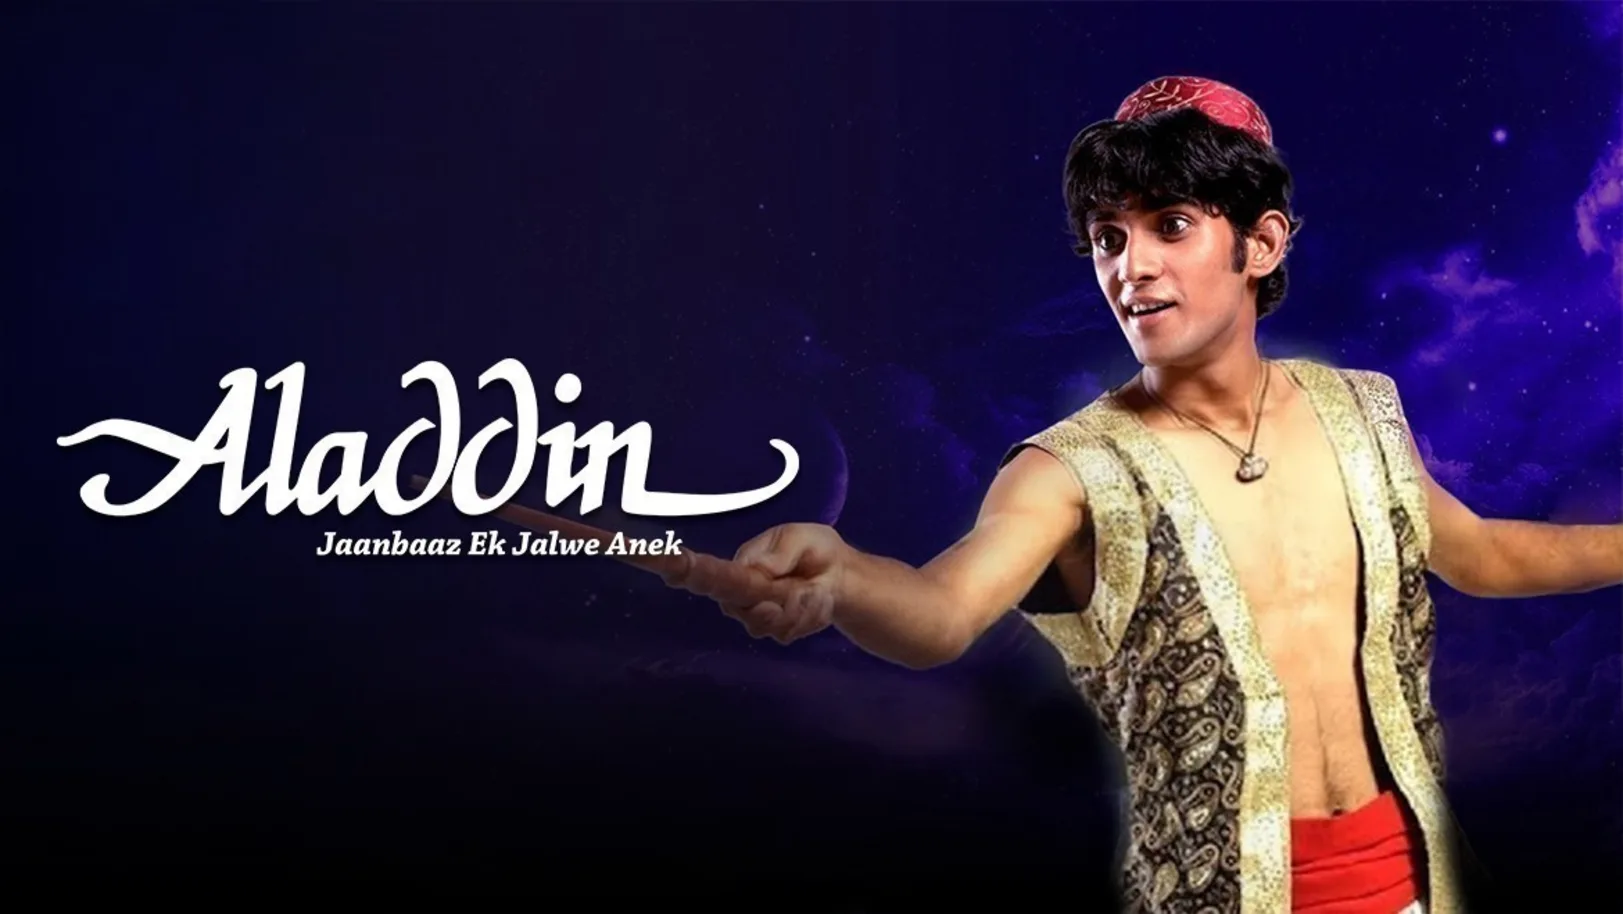 Aladdin Jaanbaaz Ek, Jalwe Anek TV Show